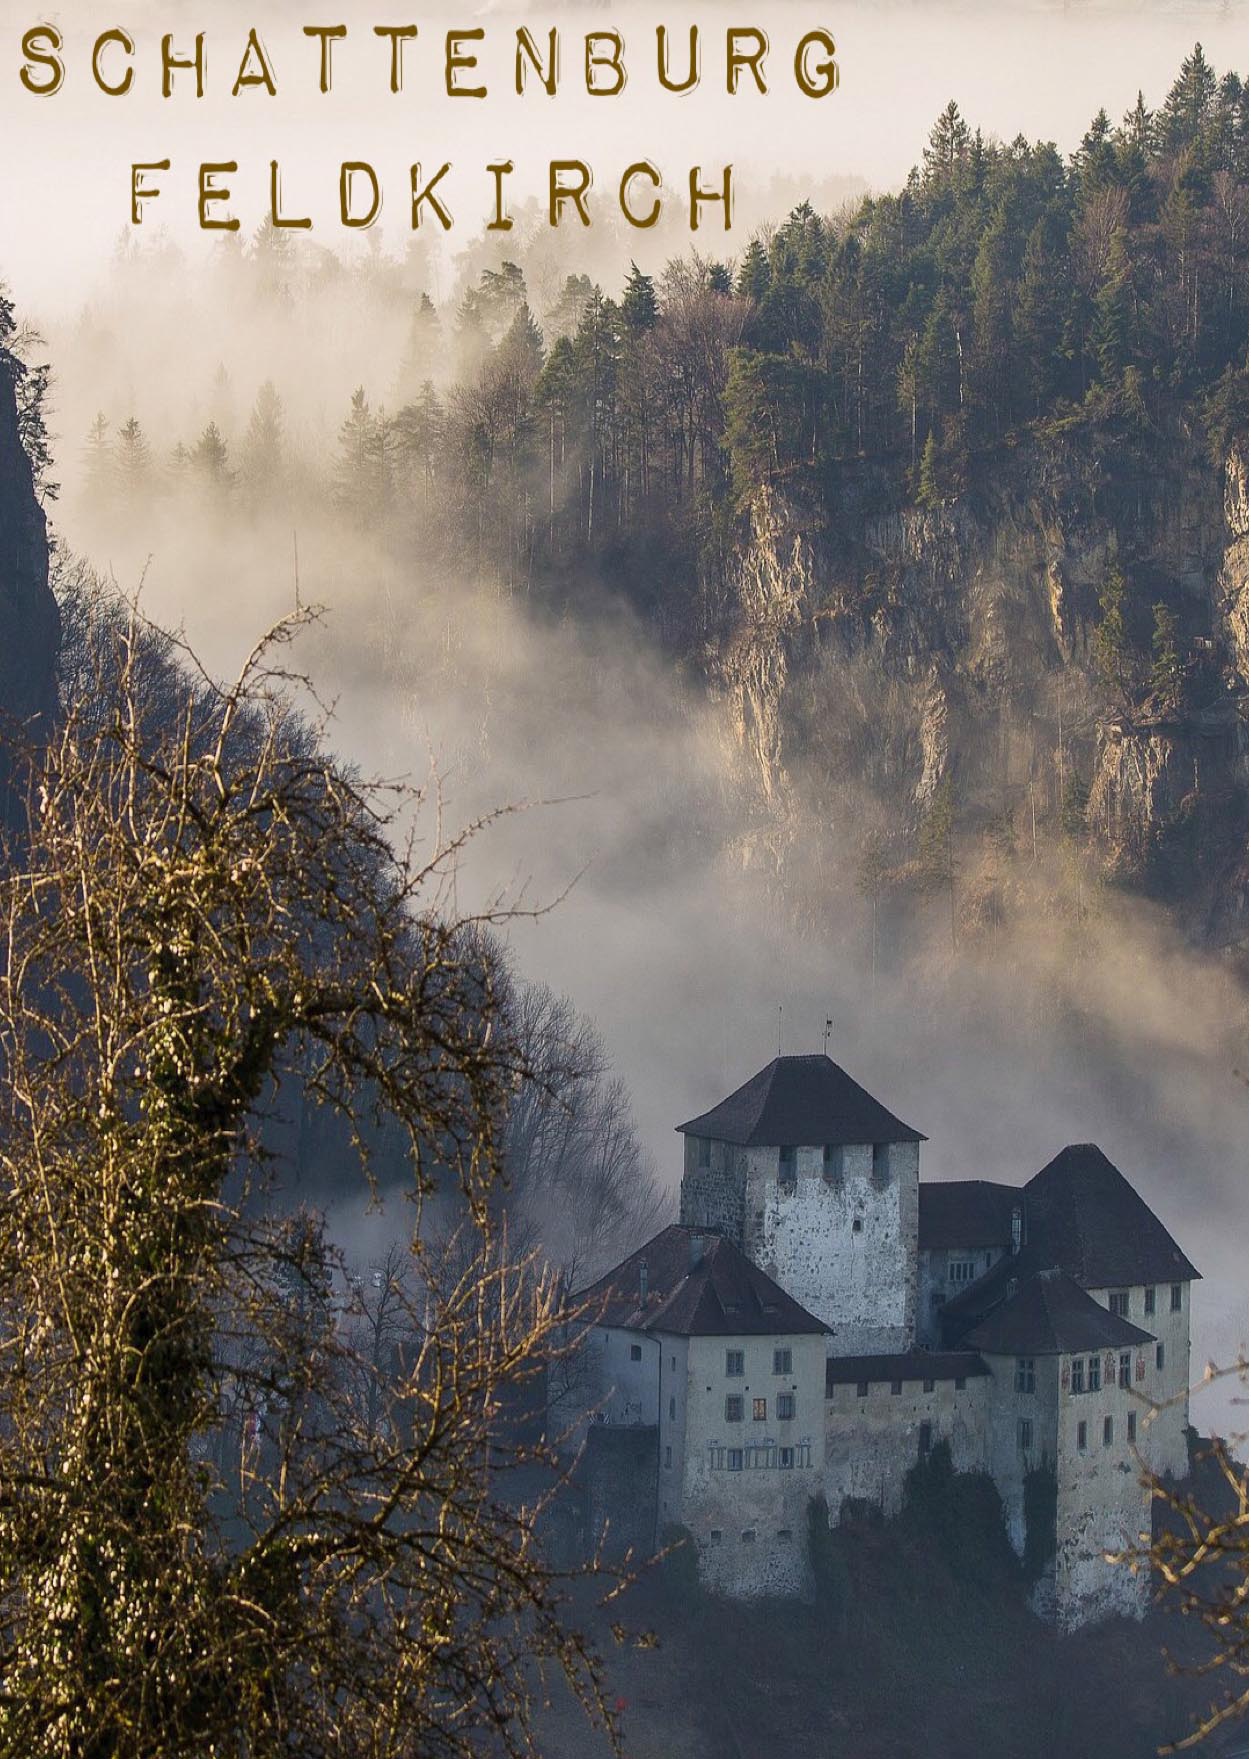 Hochmittelalterliche Schattenburg oberhalb der Stadt Feldkirch Vorarlberg, Österreich